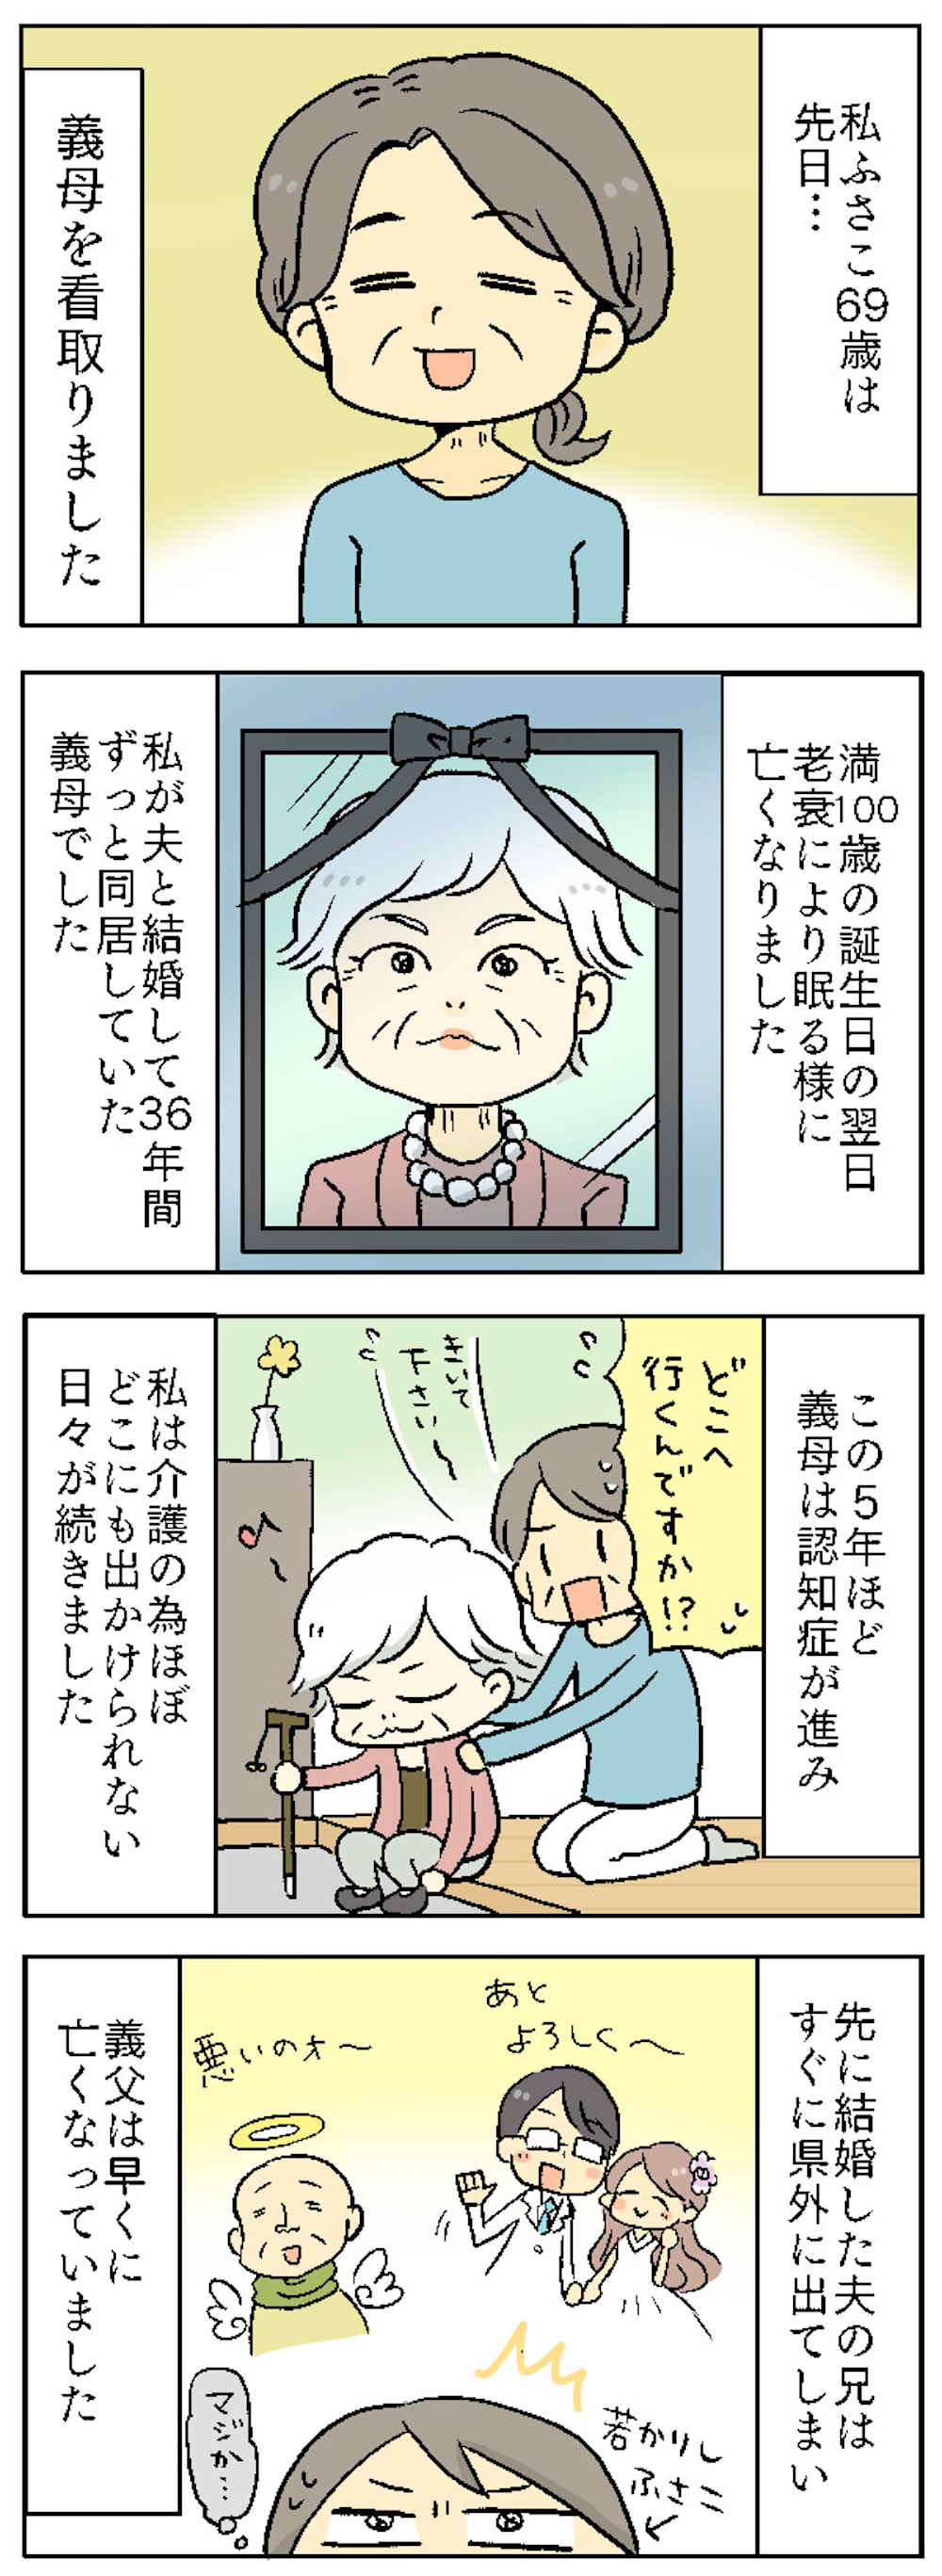 【漫画】同居して36年...100歳で亡くなった義母が言いふらし続けた嘘ばかりの「悪口」＜前編＞ 01.jpg